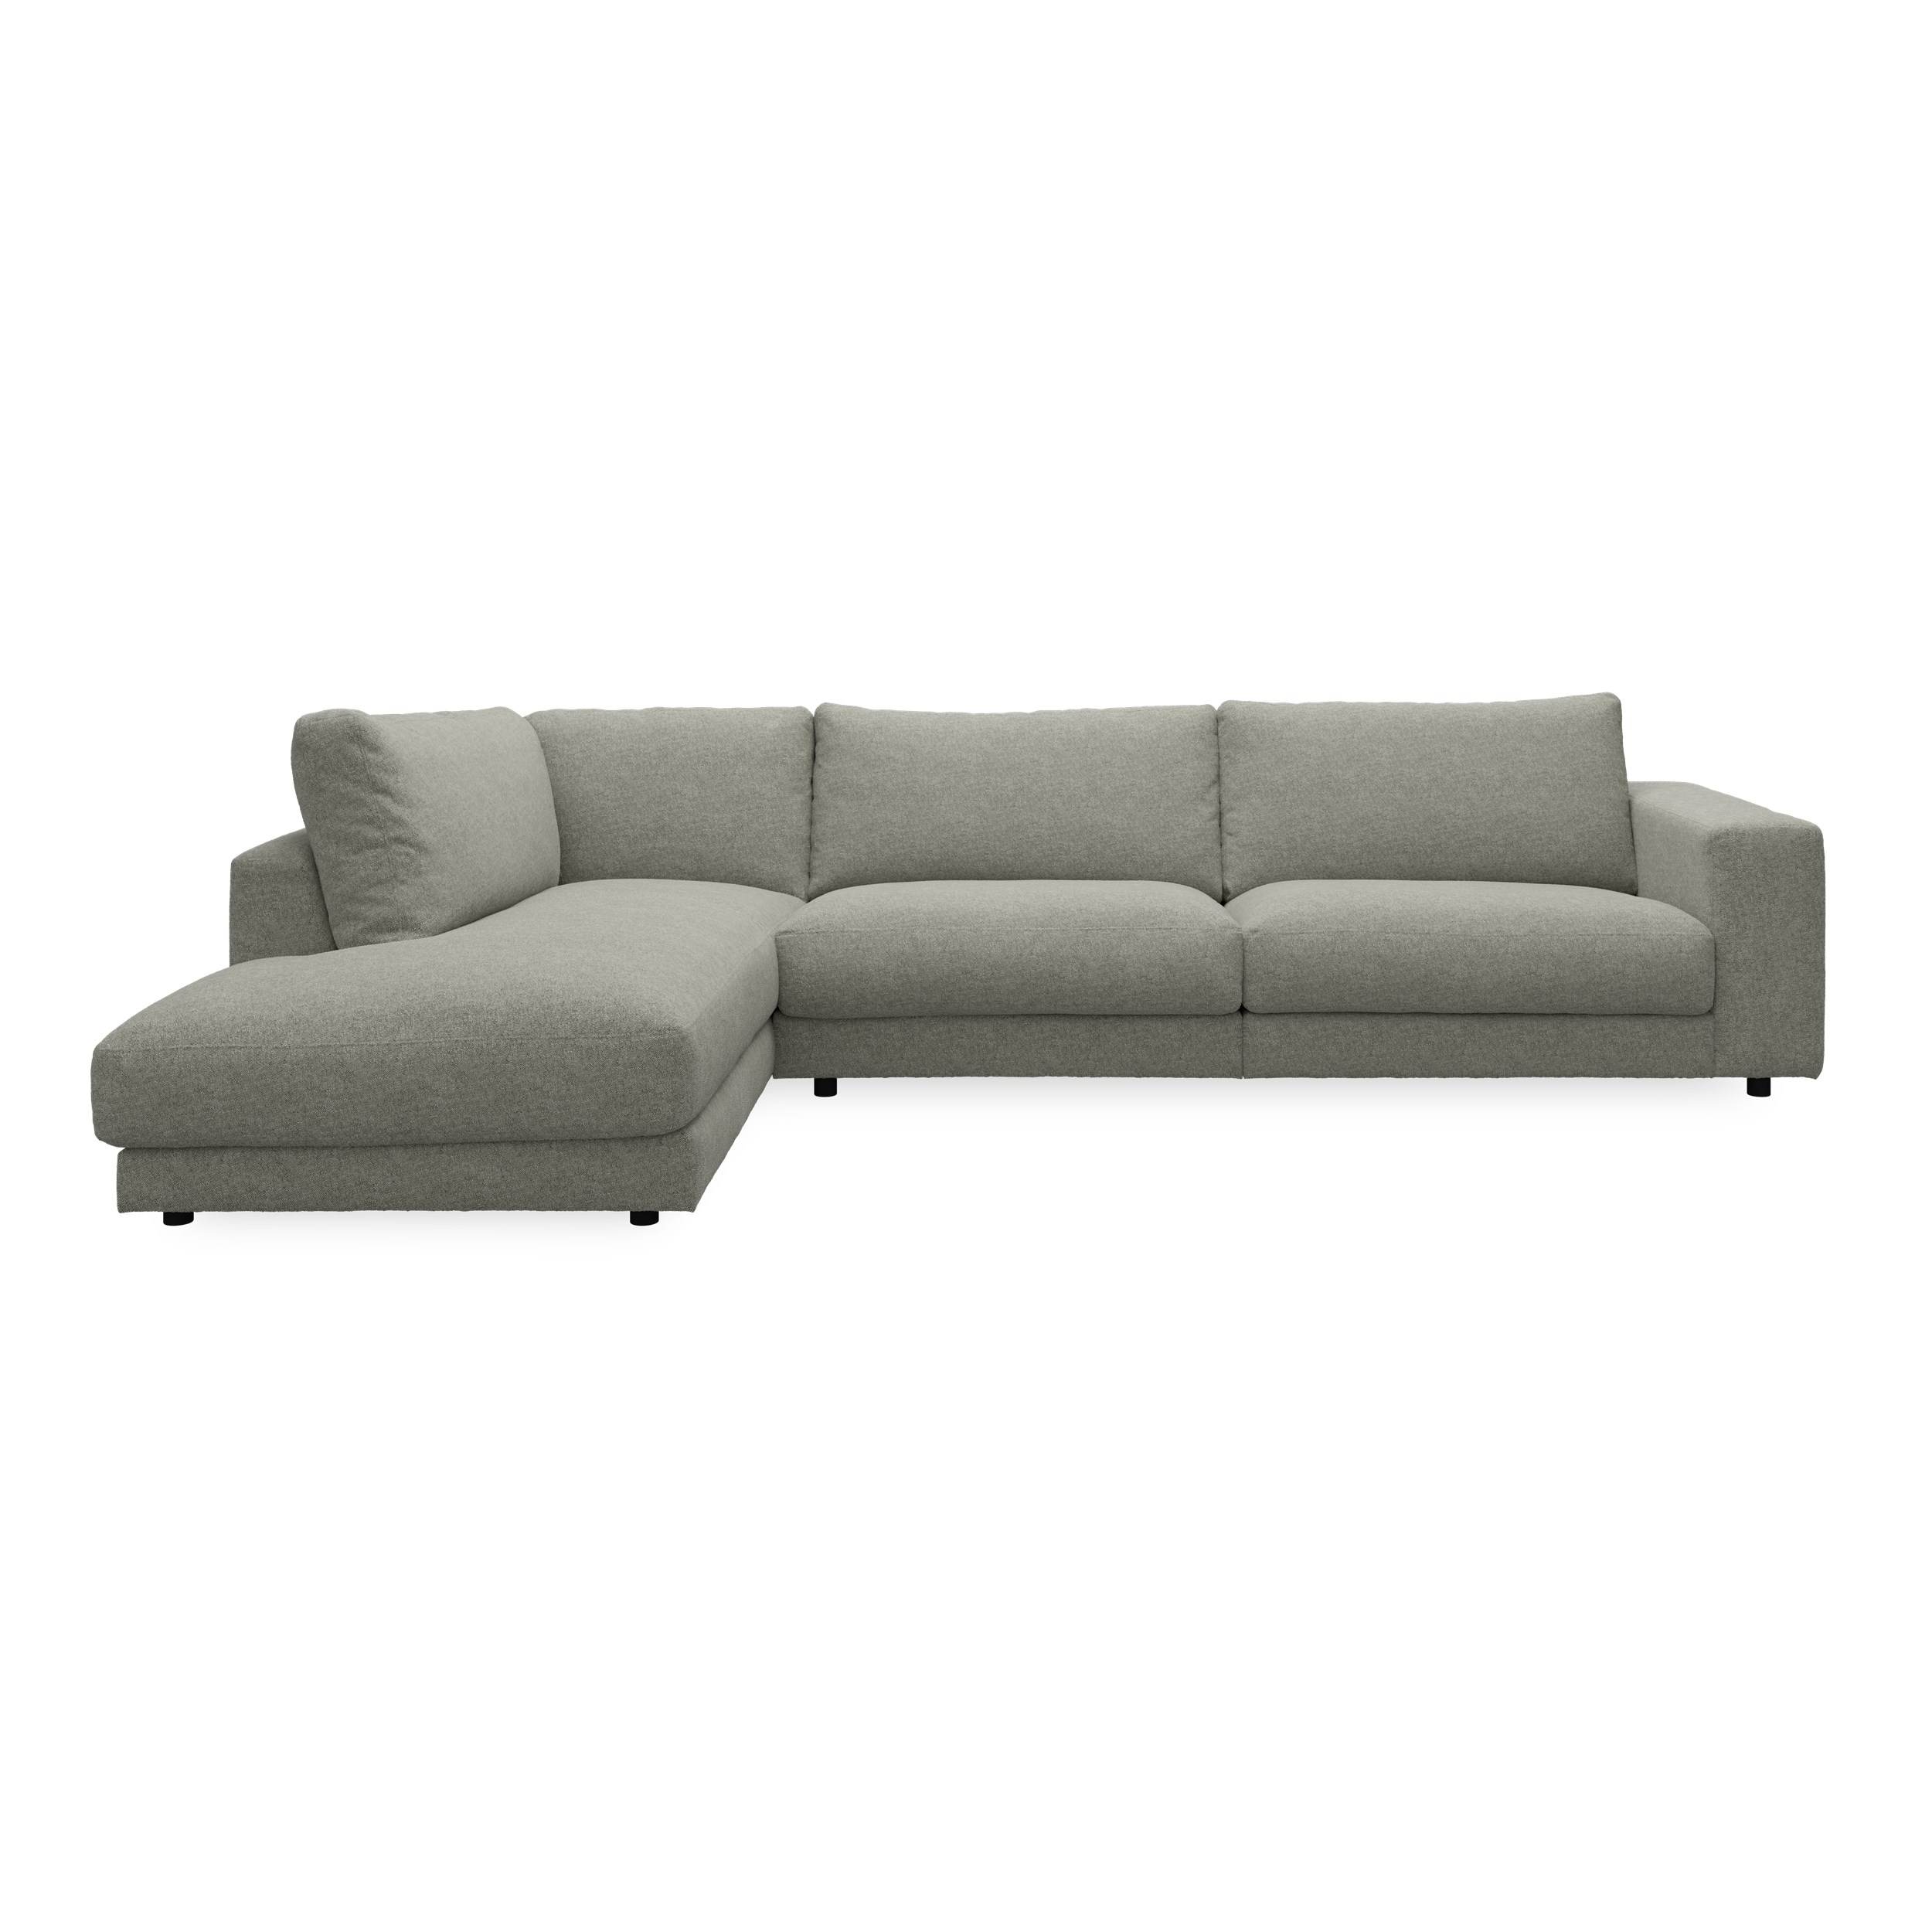 Bennent vänstervänd soffa med divan - Yelda Light Grey klädsel, ben i svart plast och S:skum/fib/din/sili R:Dun/skum